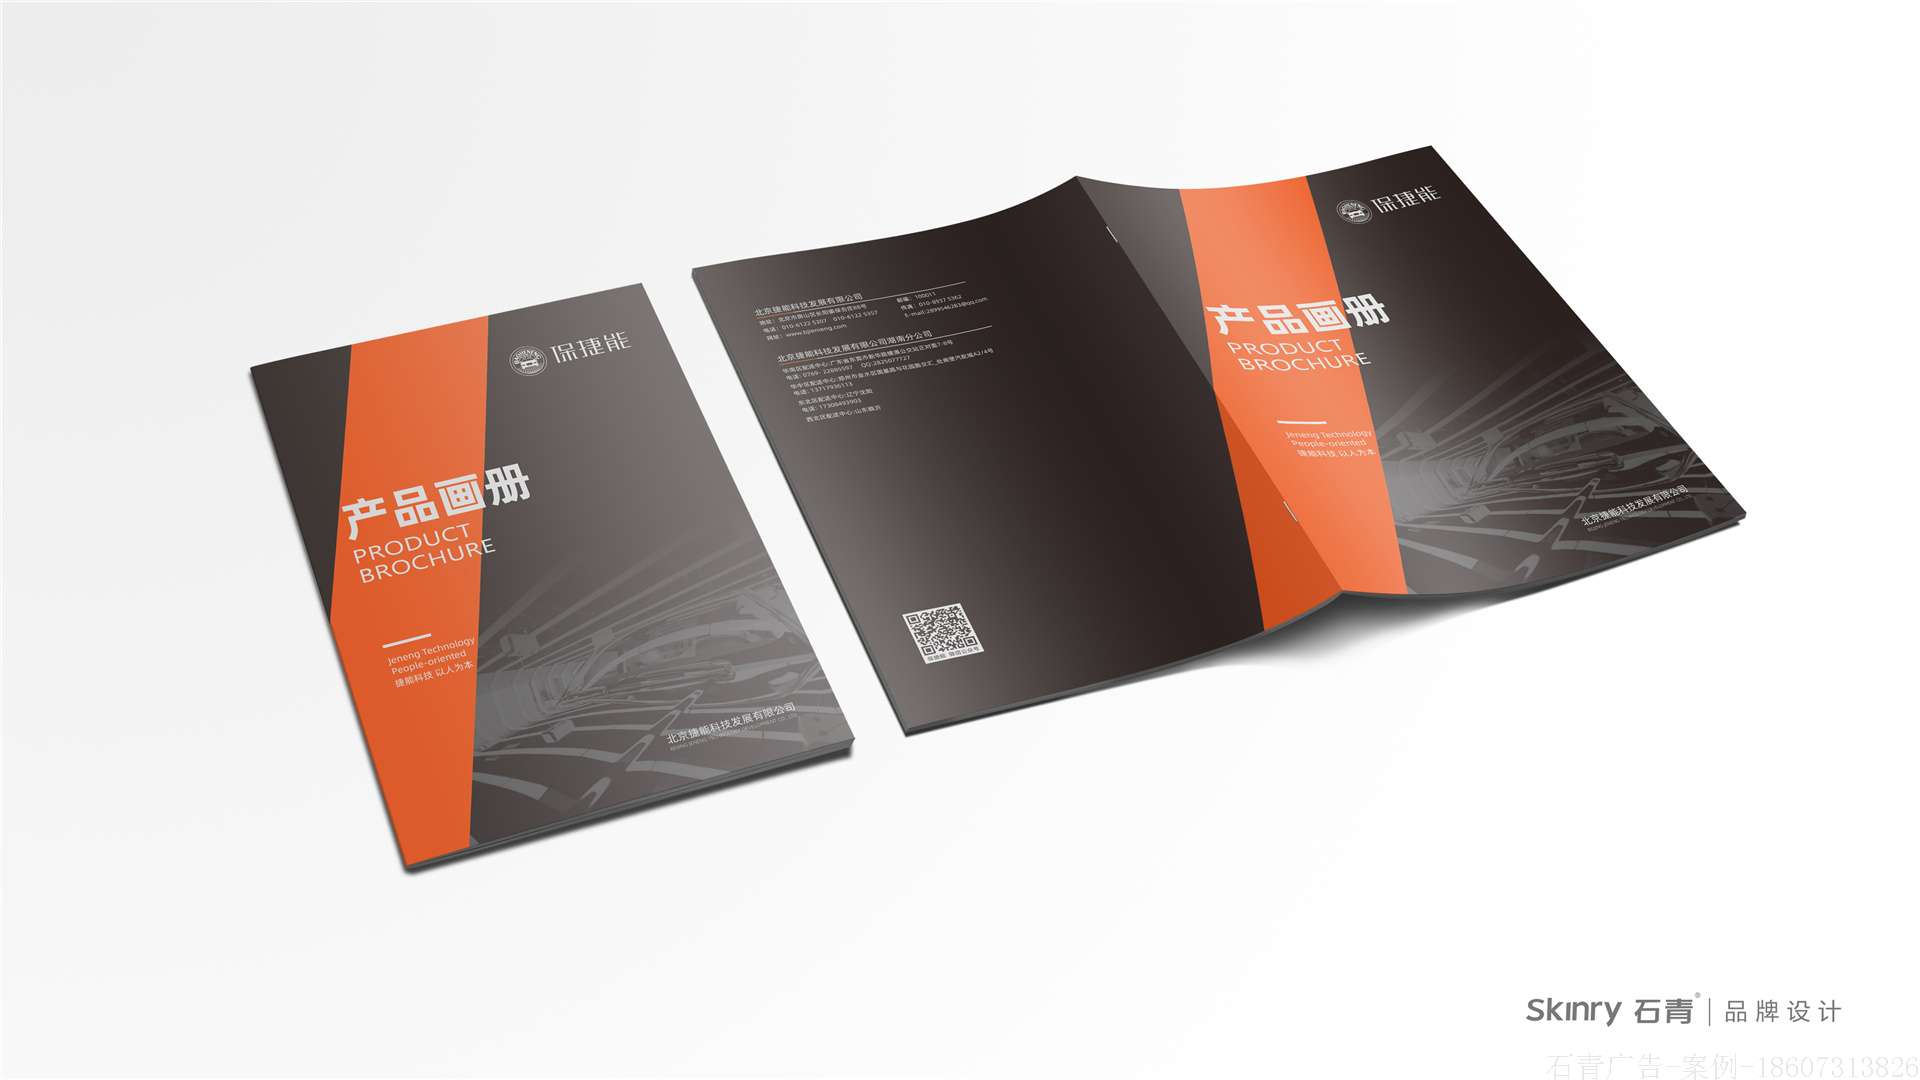 保捷能科技产品手册设计 环保产品手册设计